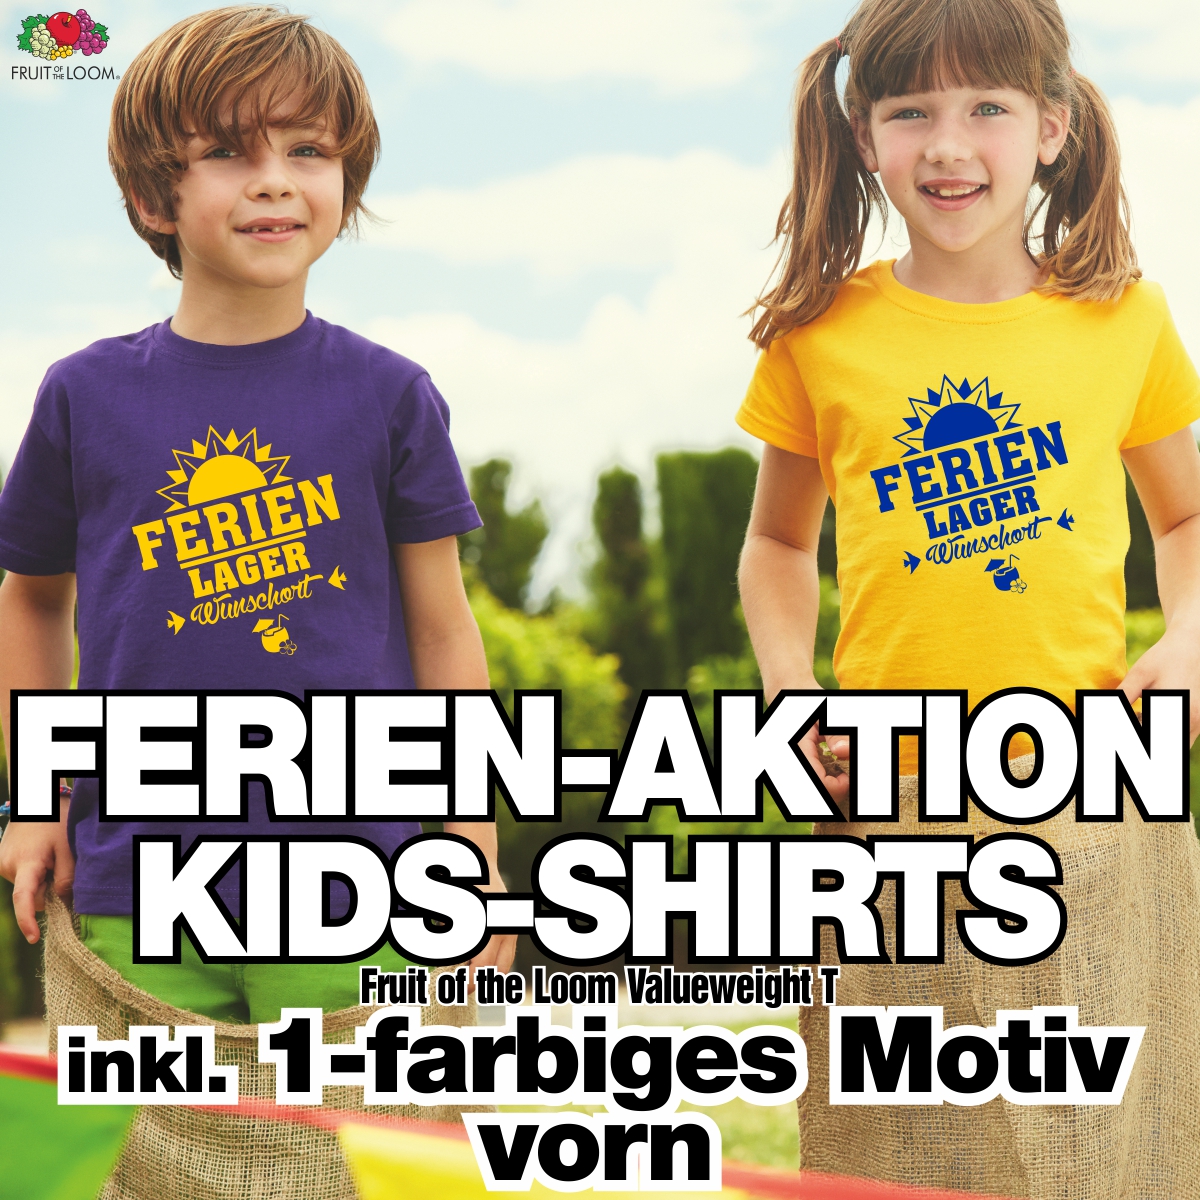 Ferien-Aktion, Kinder-Shirts inkl. 1-farbigem Motiv